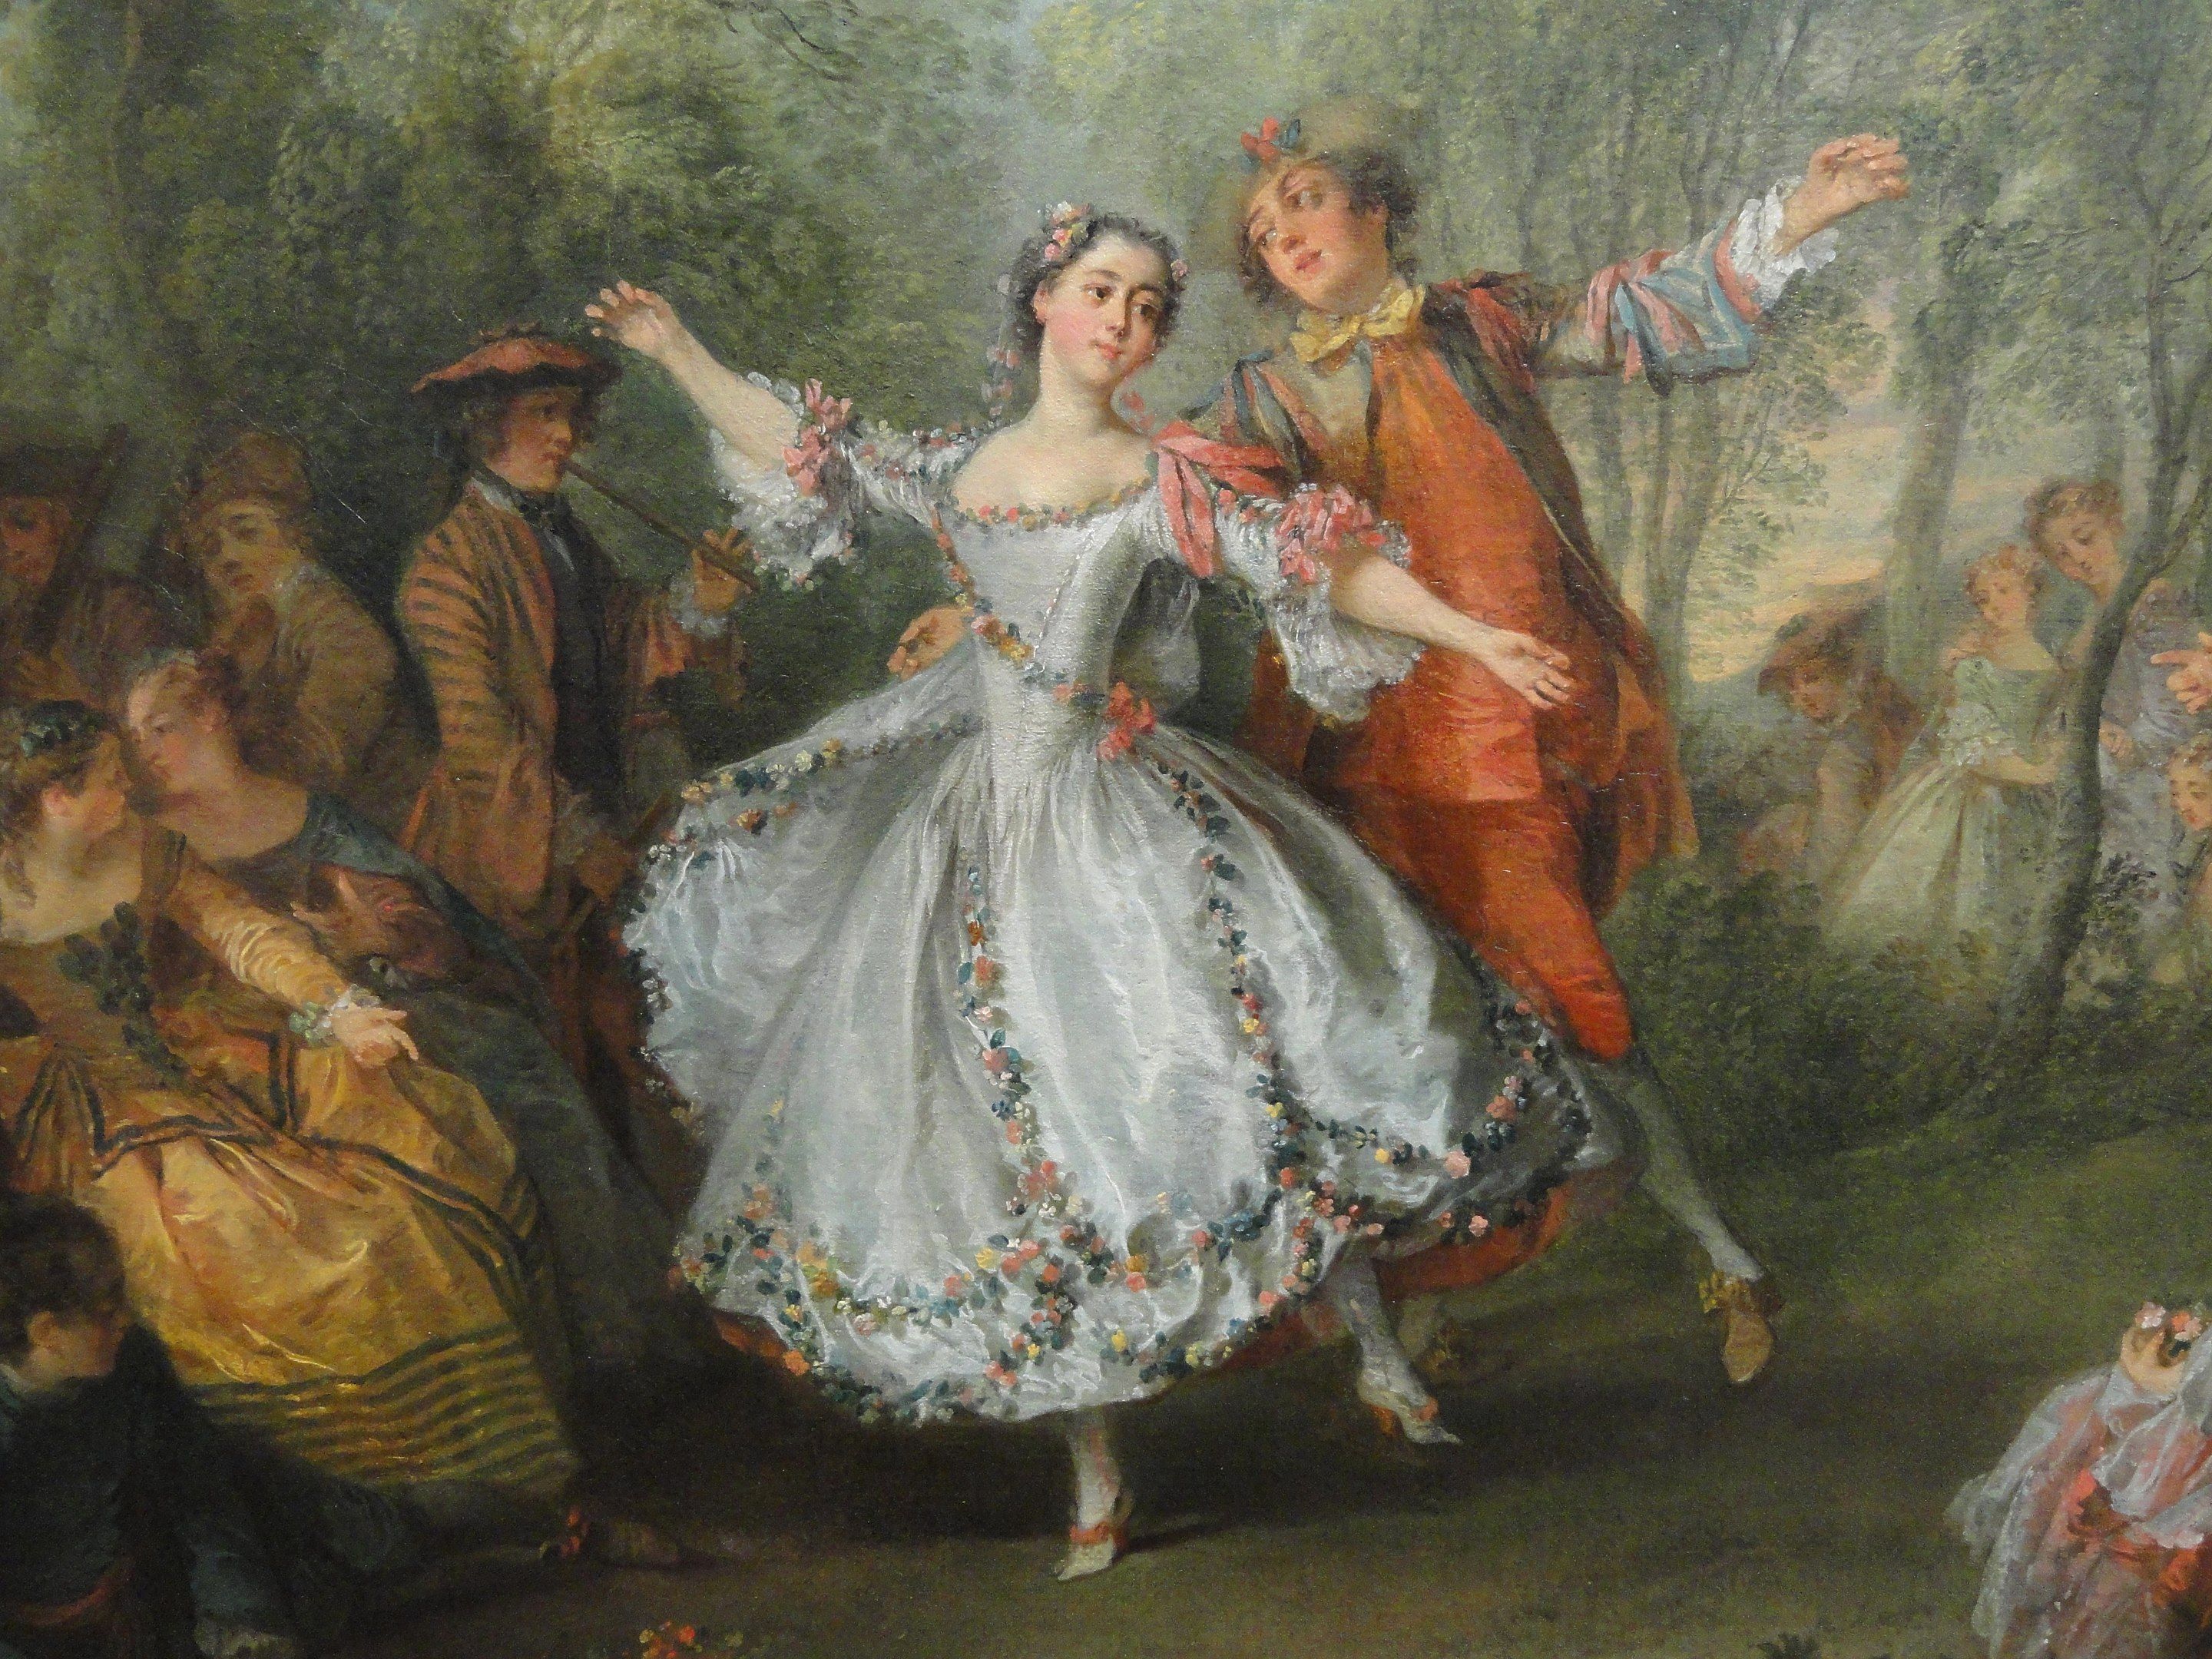 La Camargo Dancing by Nicolas Lancret, c. 1730/CC0.